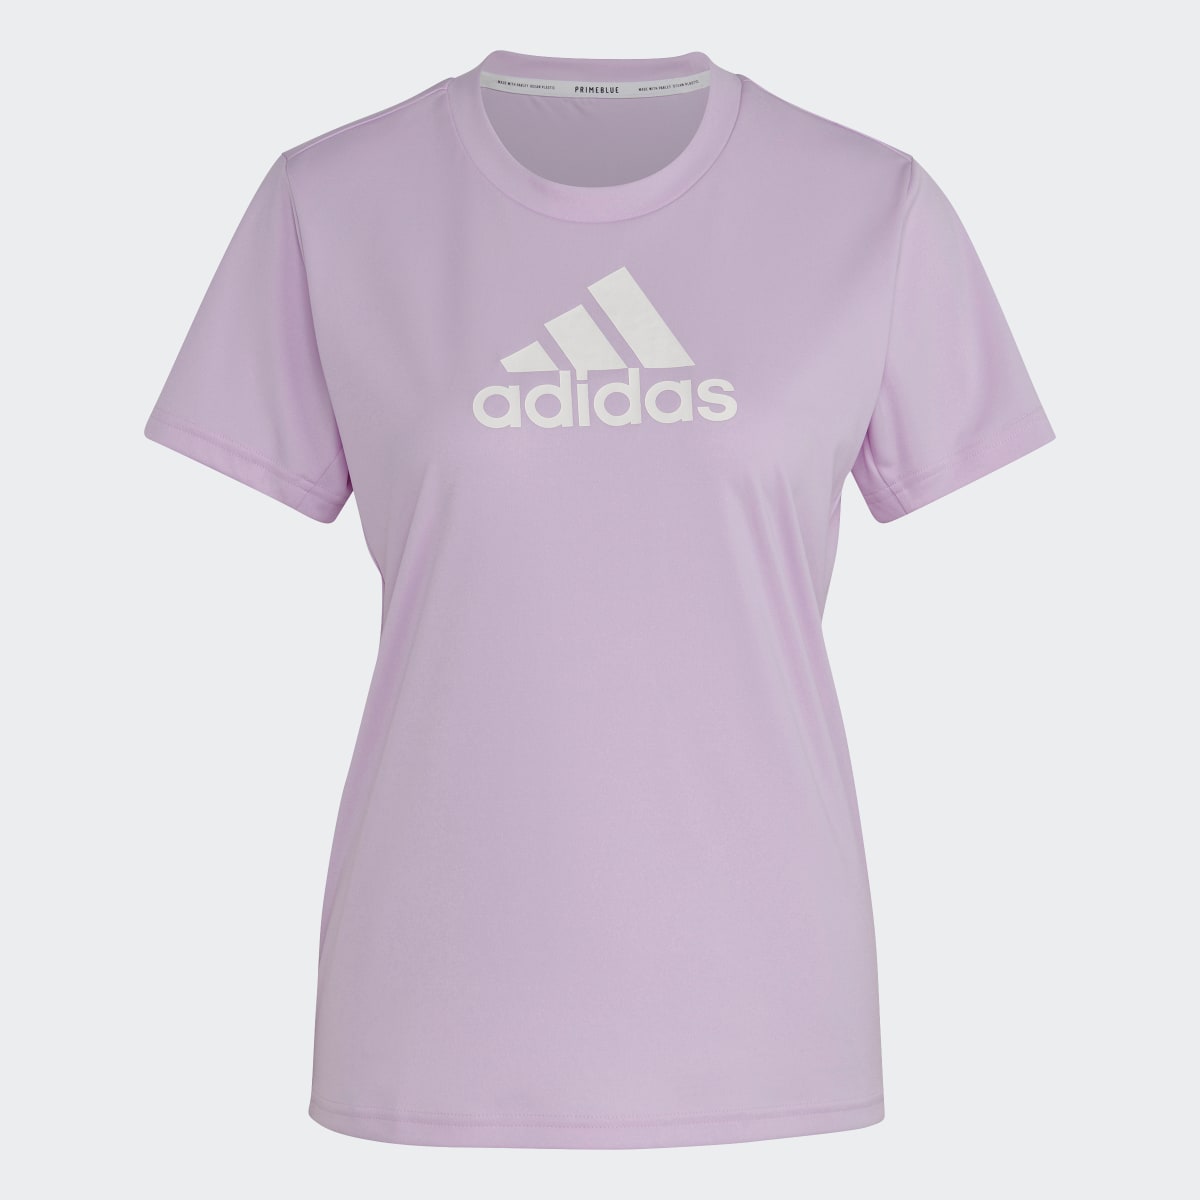 Adidas Primeblue Designed 2 Move Logo Sport T-Shirt. 5